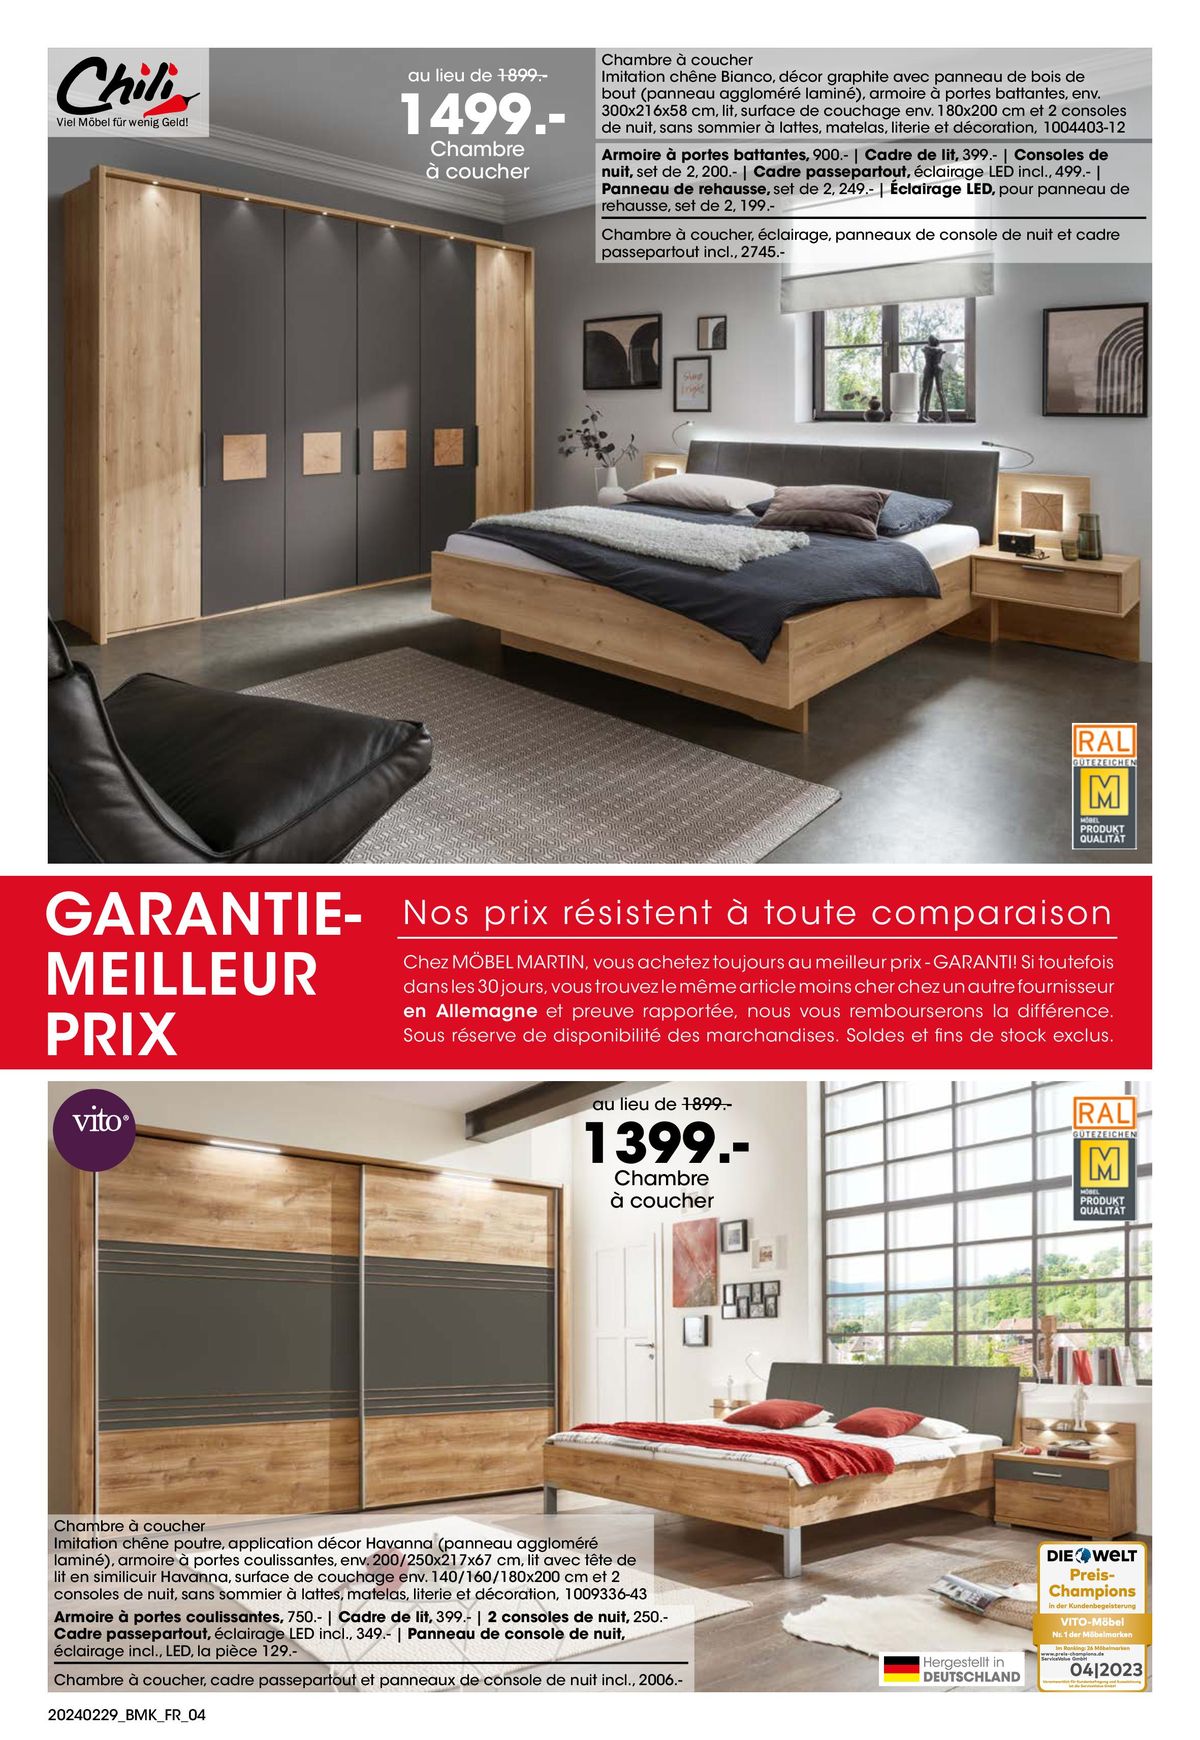 Catalogue Votre nouveau chez-vous avec GARANTIE-MEILLEUR PRIX, page 00004